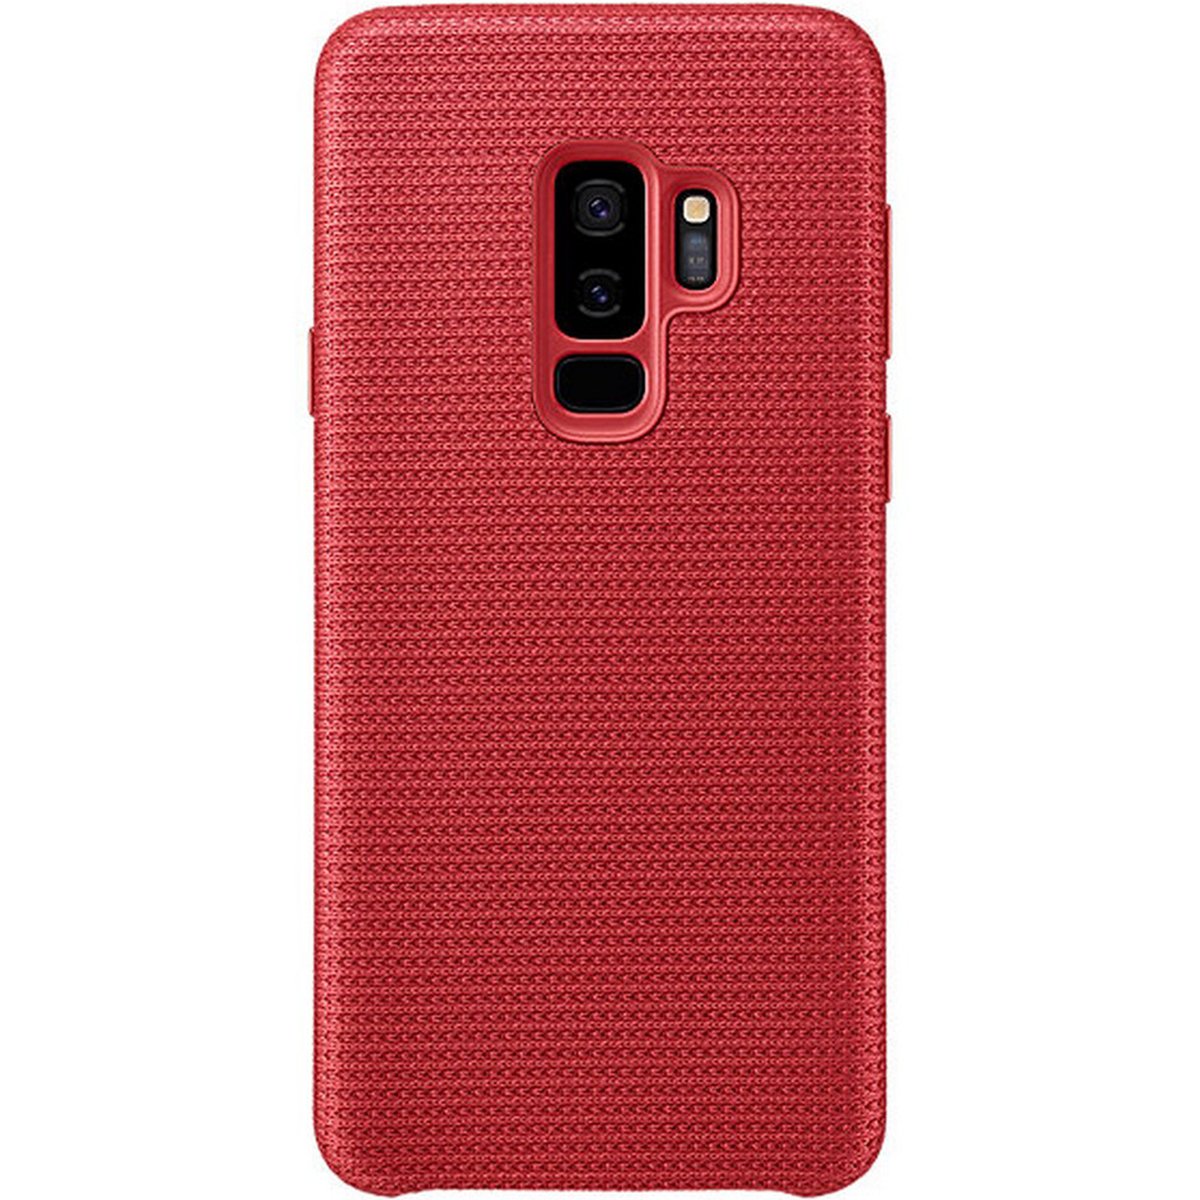 Samsung Galaxy S9+ Hyperknit Cover Red EF-GG965FREGWW